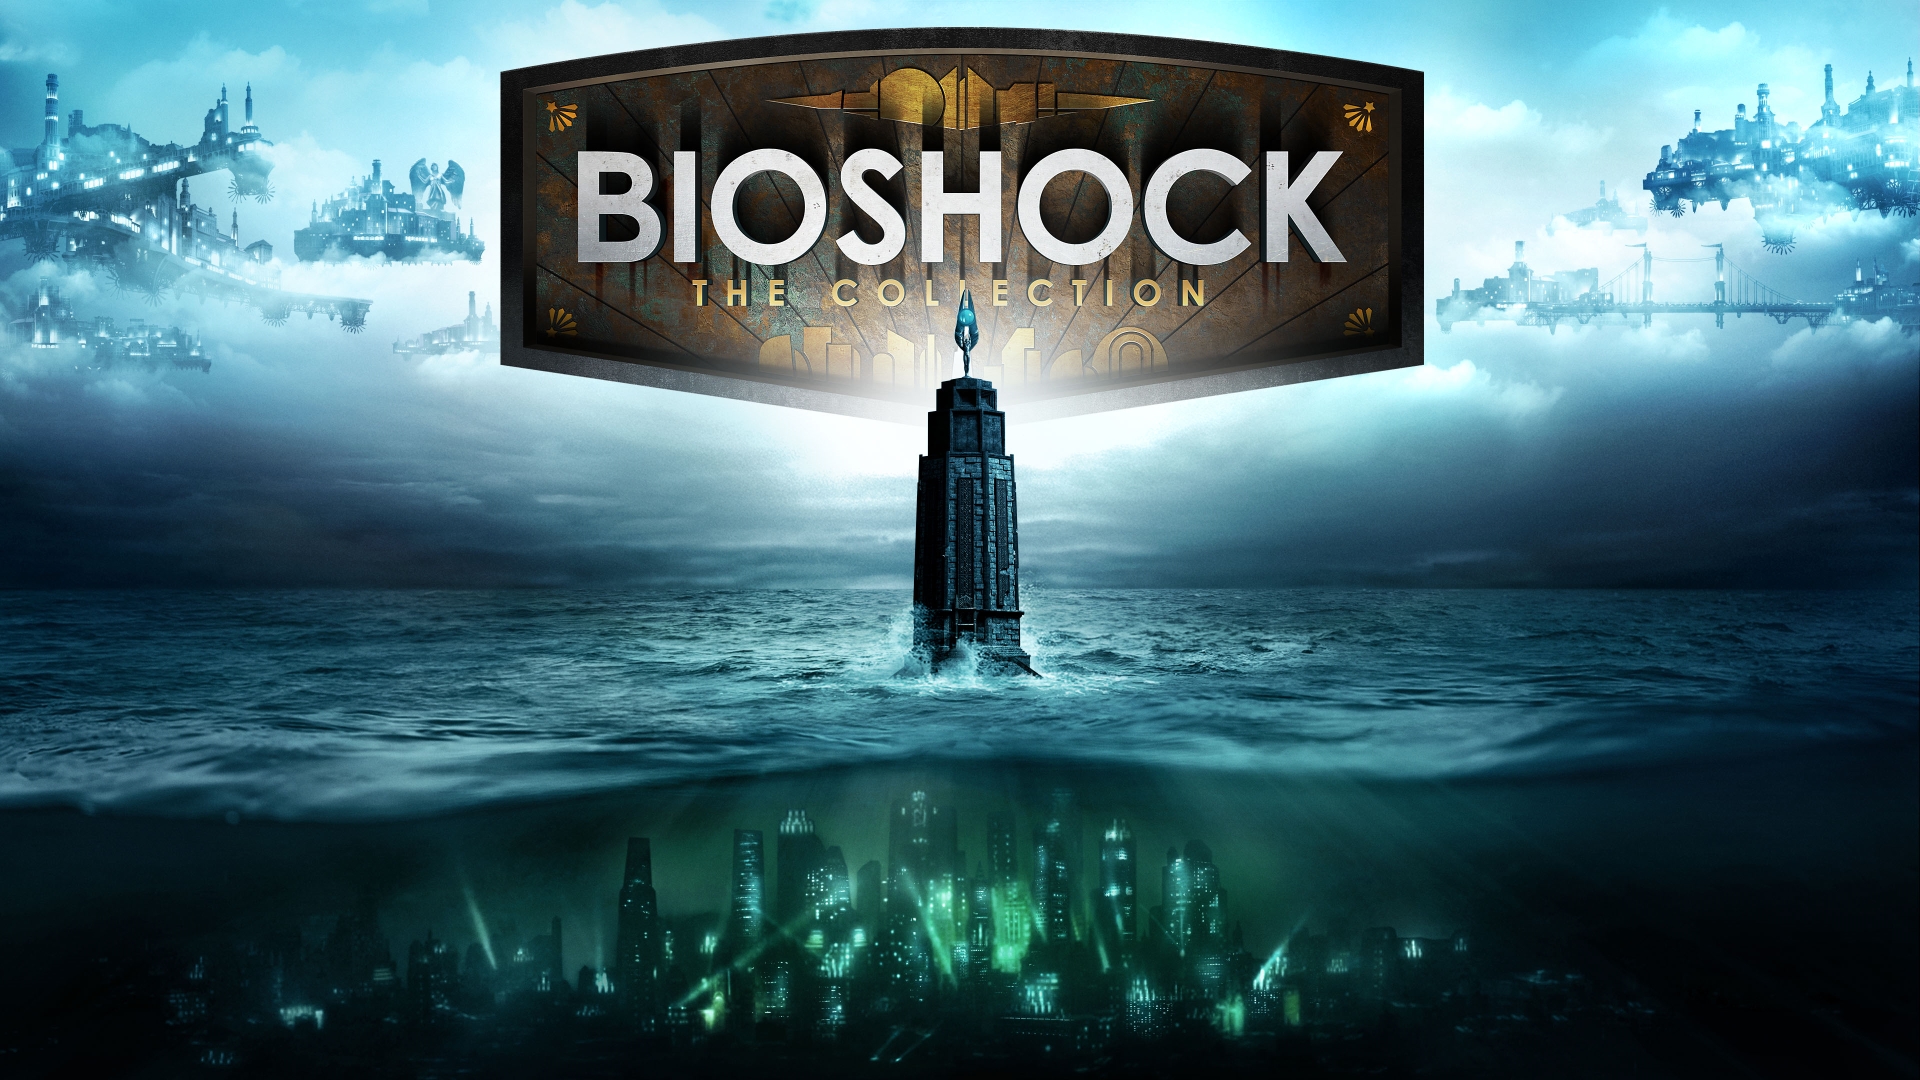 BioShock: De kolleksje kaai art